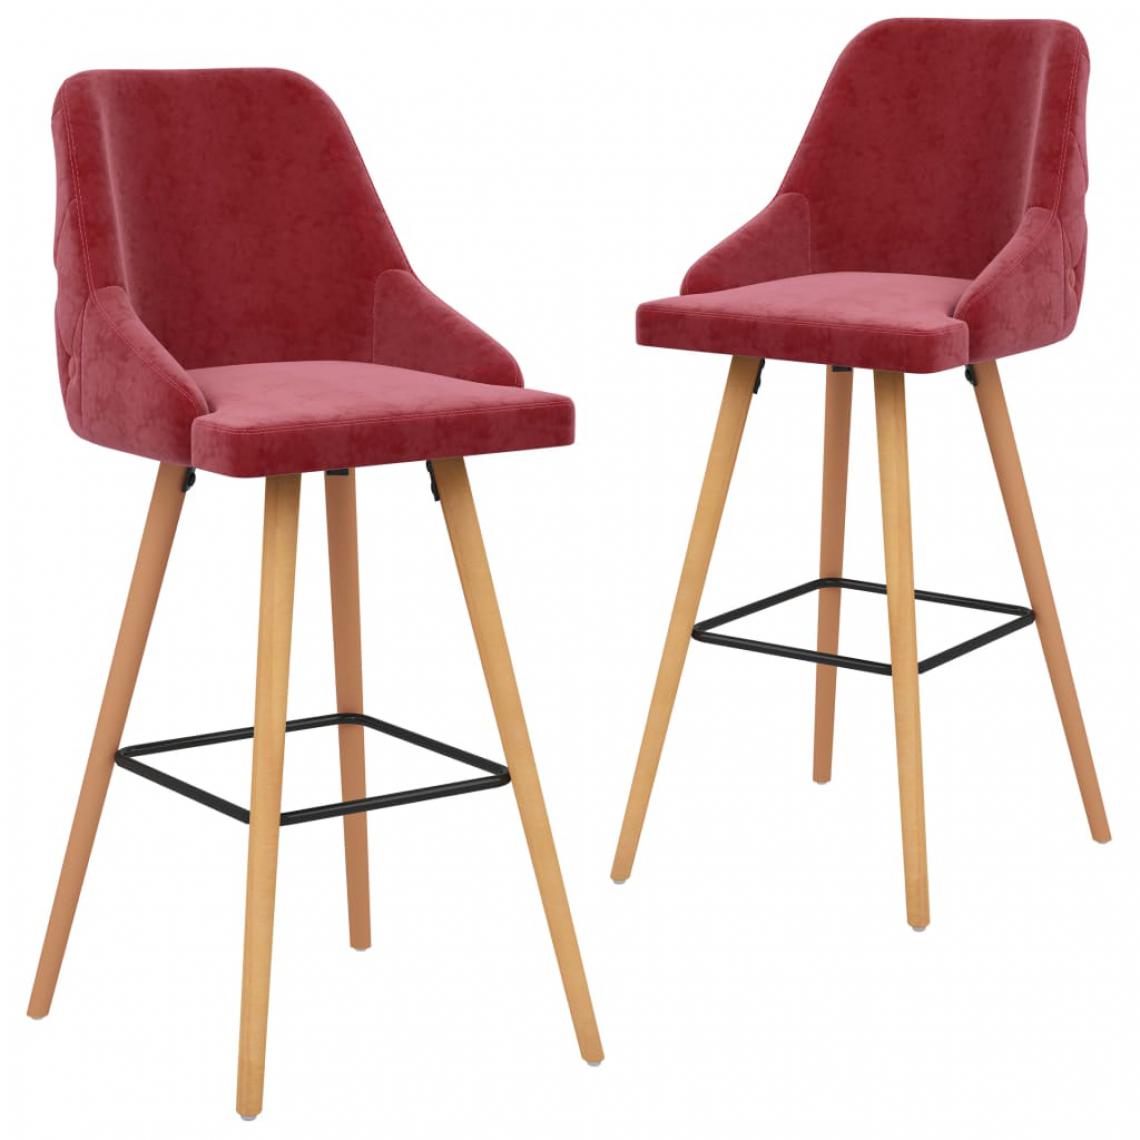 Icaverne - Admirable Fauteuils et chaises categorie Yaren Chaises de bar 2 pcs Rouge bordeaux Velours - Tabourets